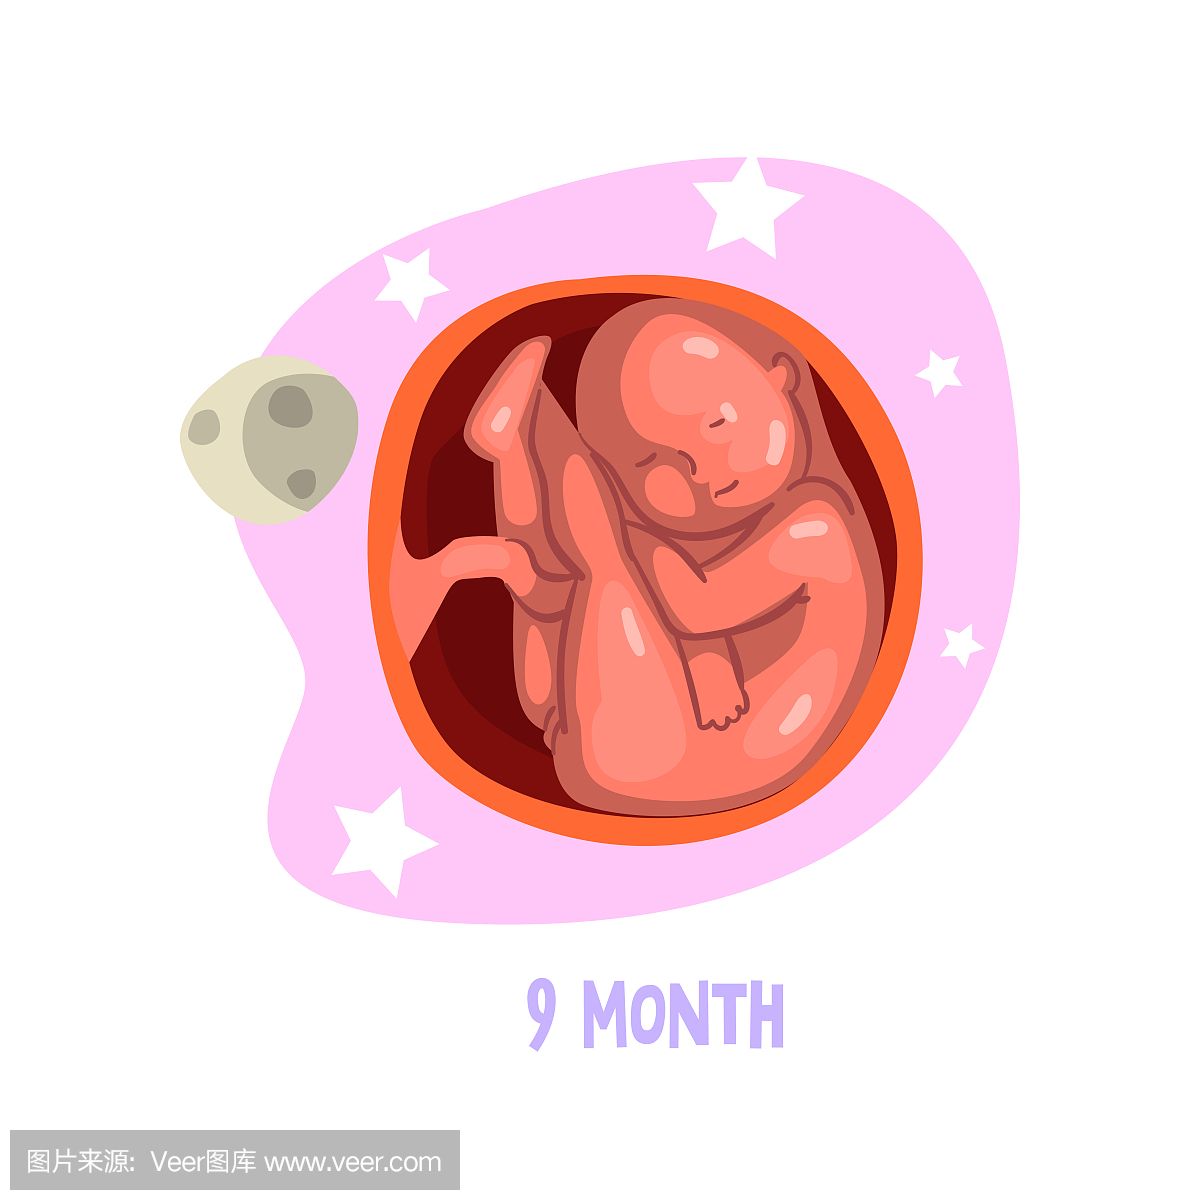 在子宫子宫内的婴儿生长。胎儿发育过程。矢量